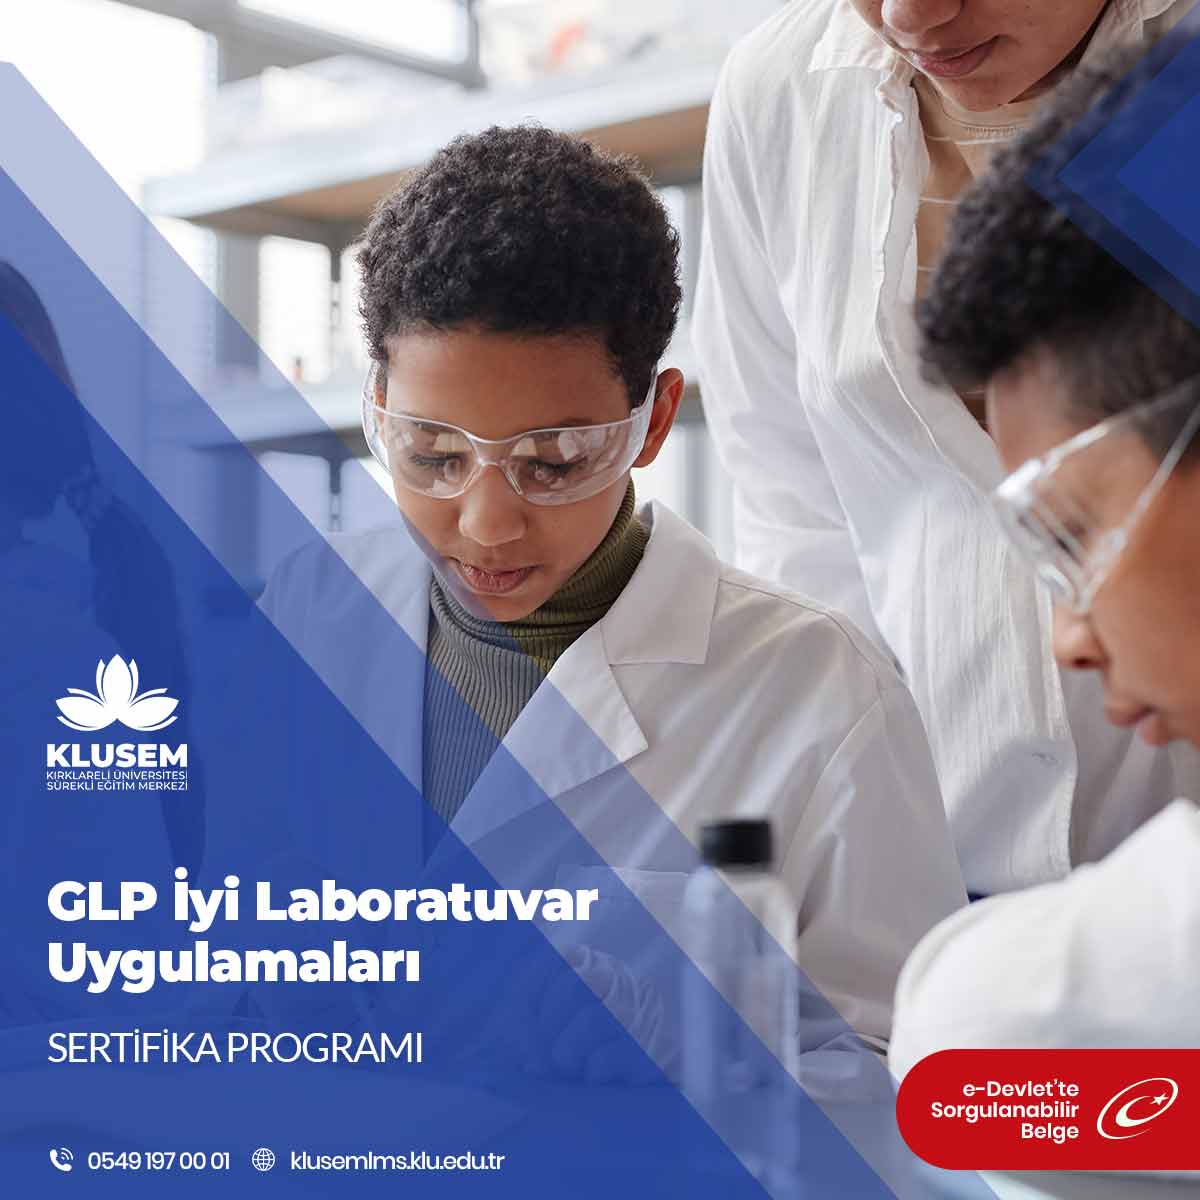 GLP İyi Laboratuvar Uygulamaları Sertifika Programı